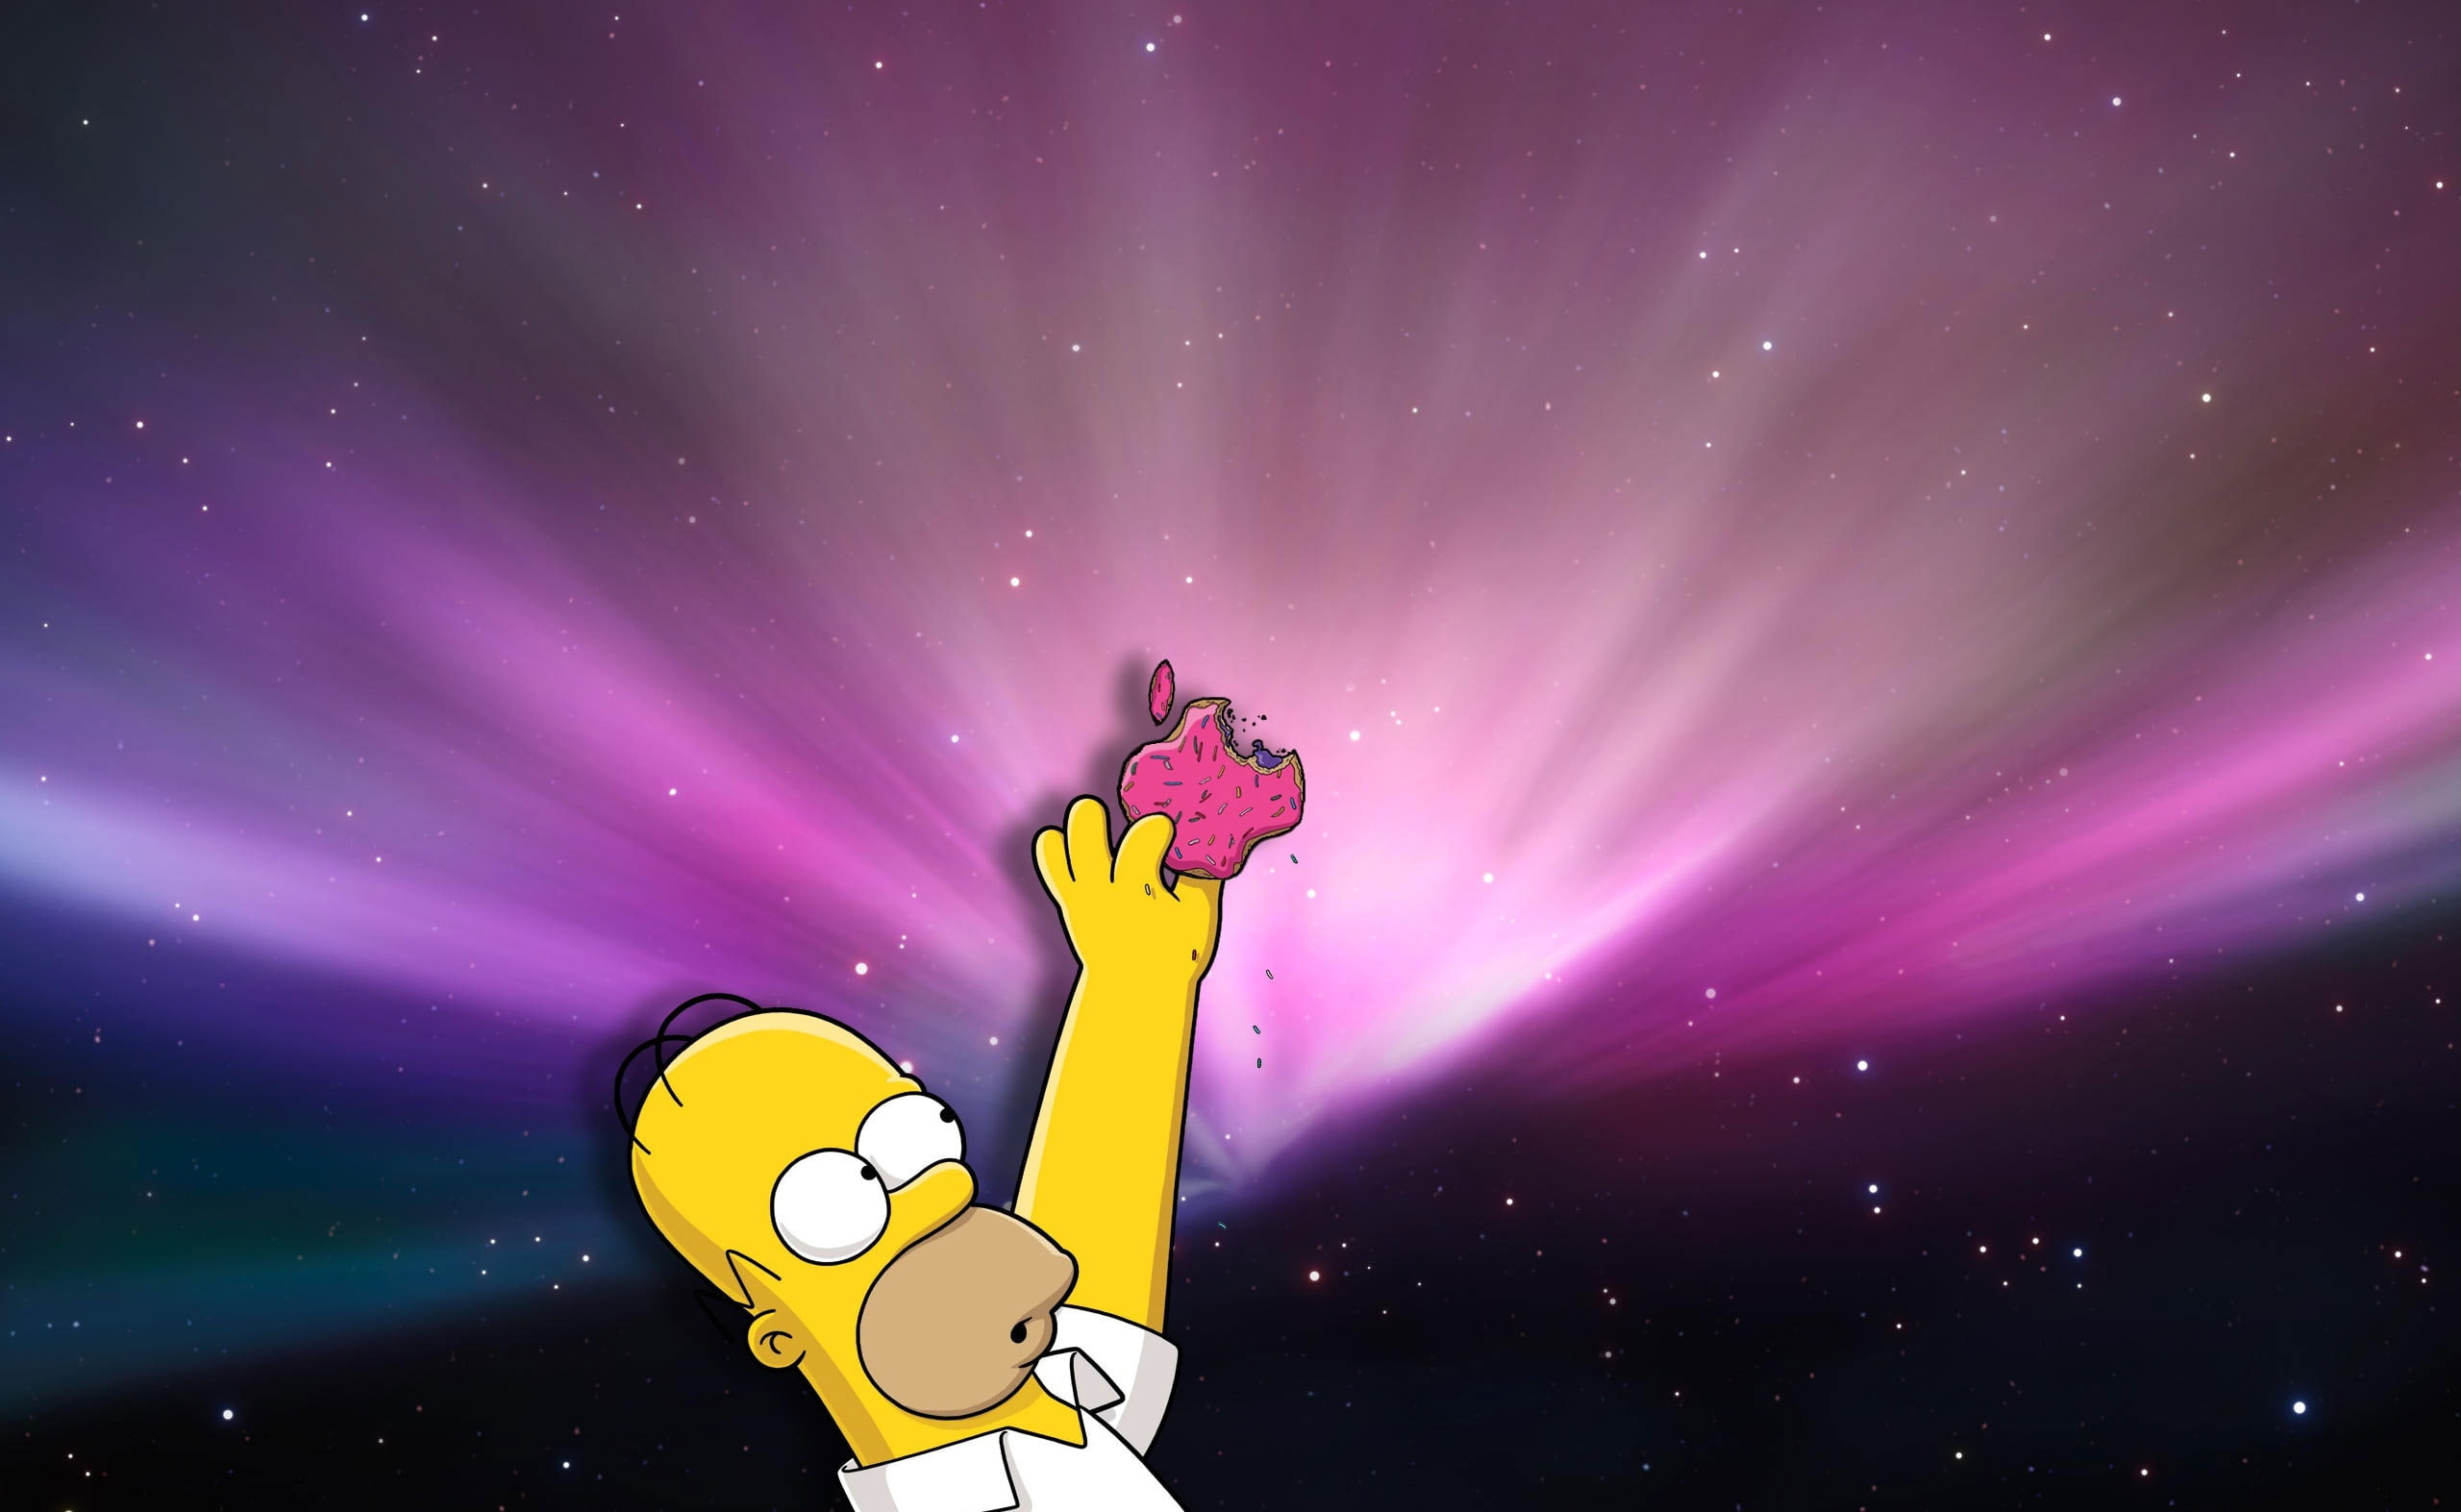 Wallpaper Homer Loves Donuts, Bart Simpson Holding Apple